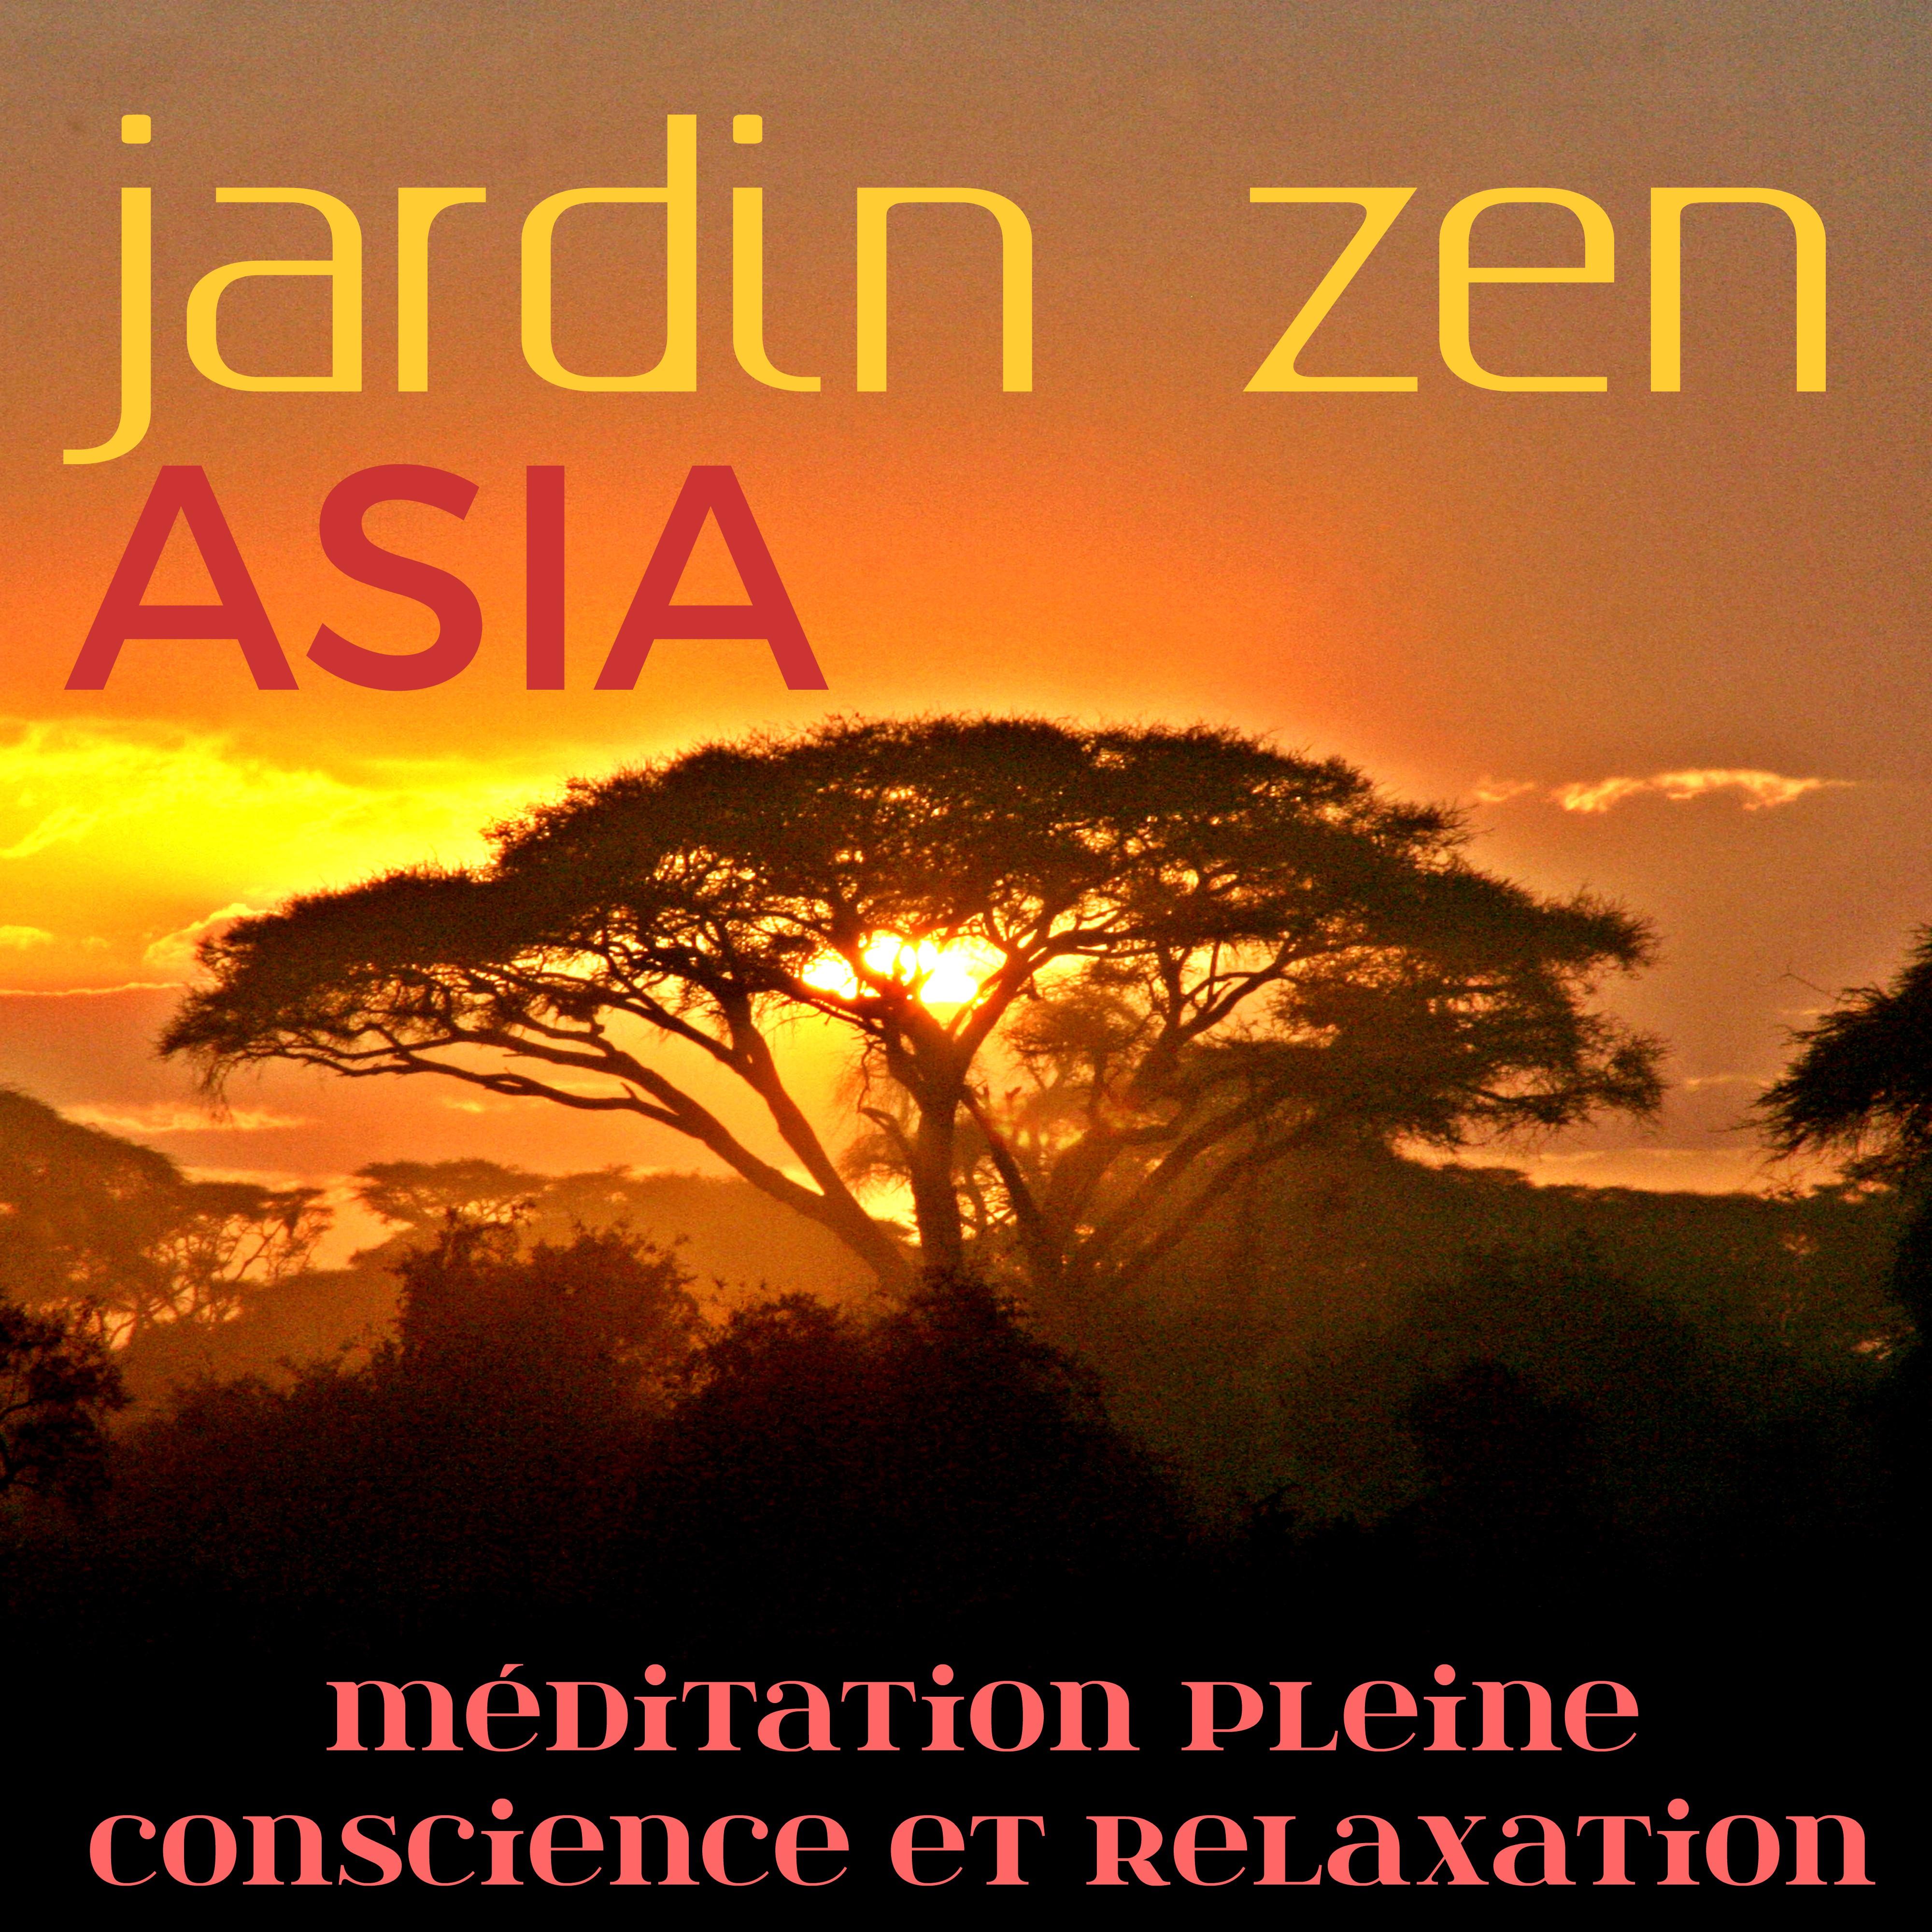 Jardin Zen Asia: Me ditation Pleine Conscience et Relaxation, É couter de la Musique Asiatique pour Apprendre comment Me diter et Se De tendre, Vivre Heureux et Serein